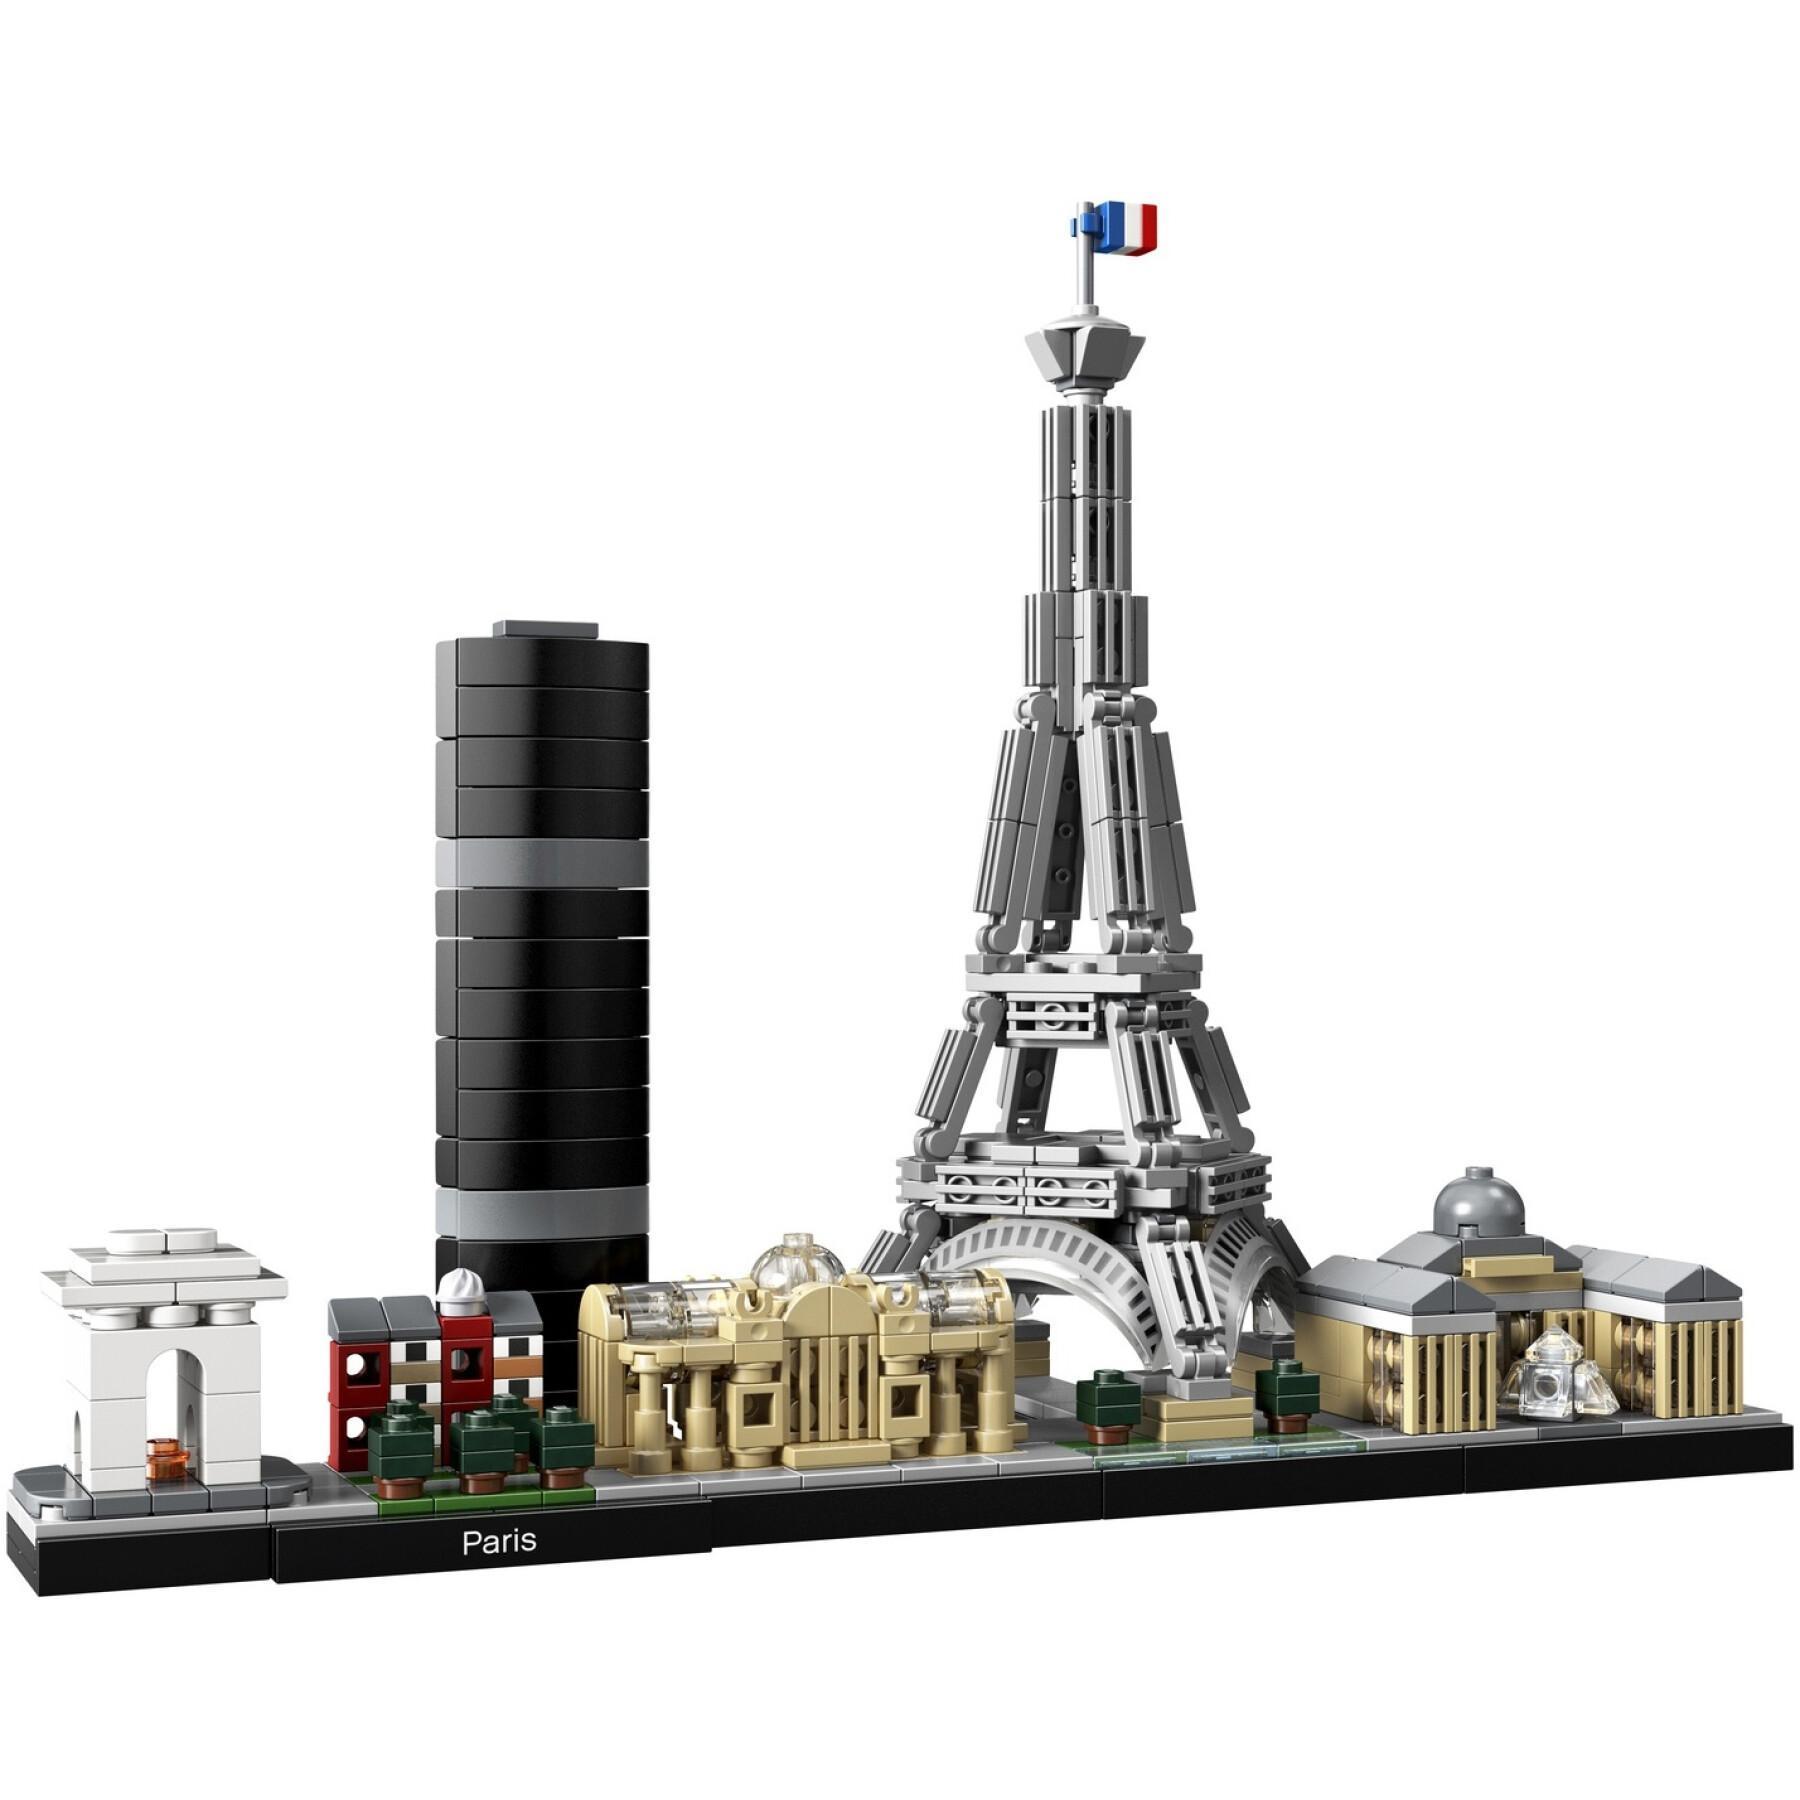 Conjuntos de edificios parís Lego Architecture